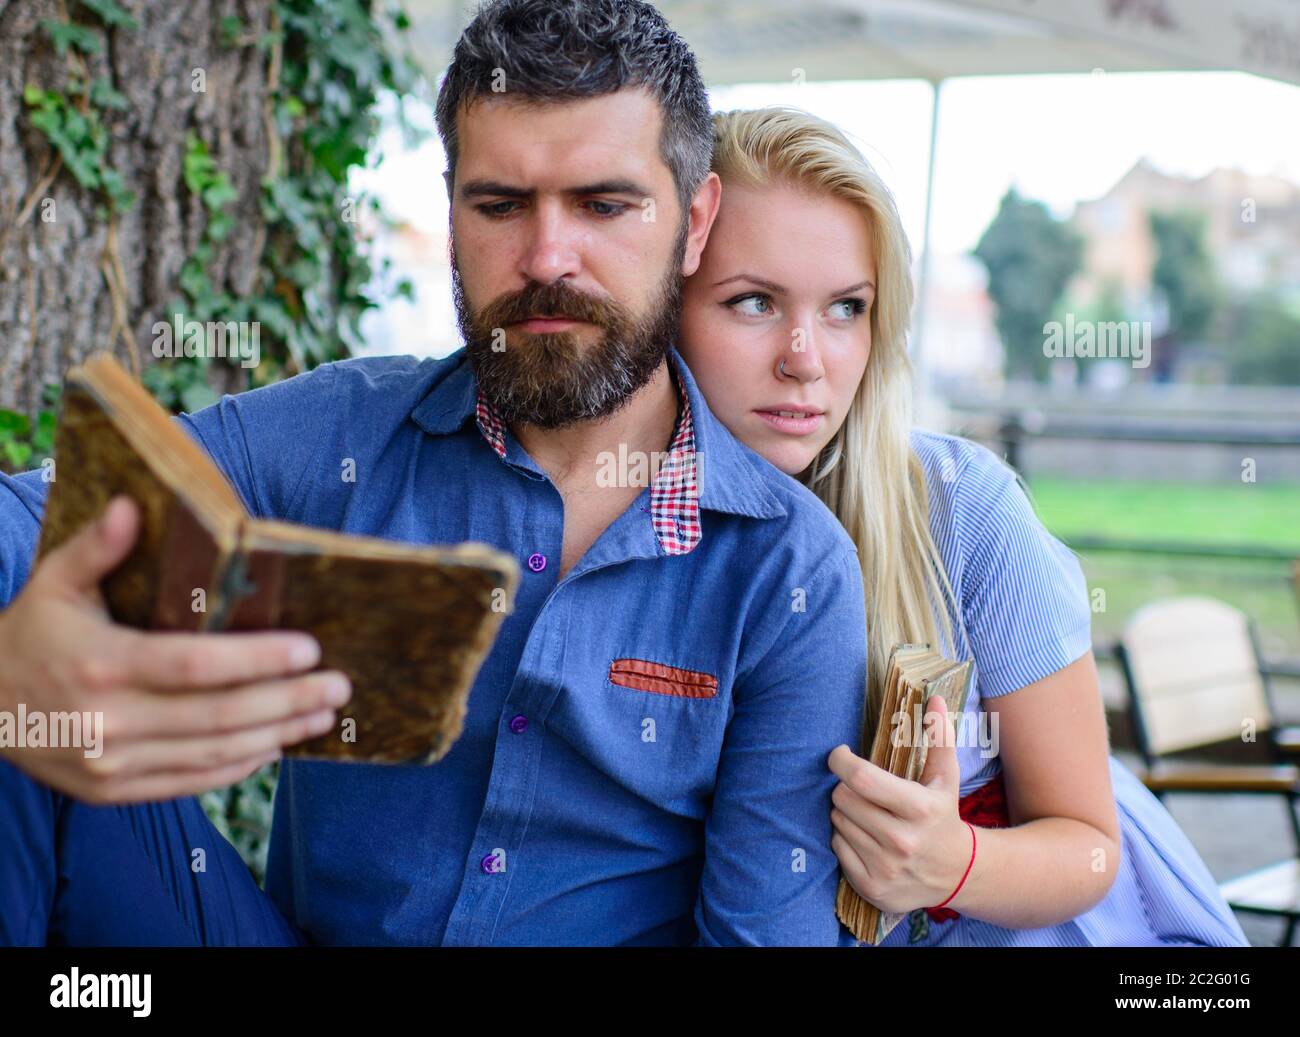 Schönes liebevolles Paar, das im Sommerpark sitzt und ein Buch liest. Liebe und Zärtlichkeit. Beziehungen, Freundschaften, Bildung, Lifestyle-Konzept Stockfoto